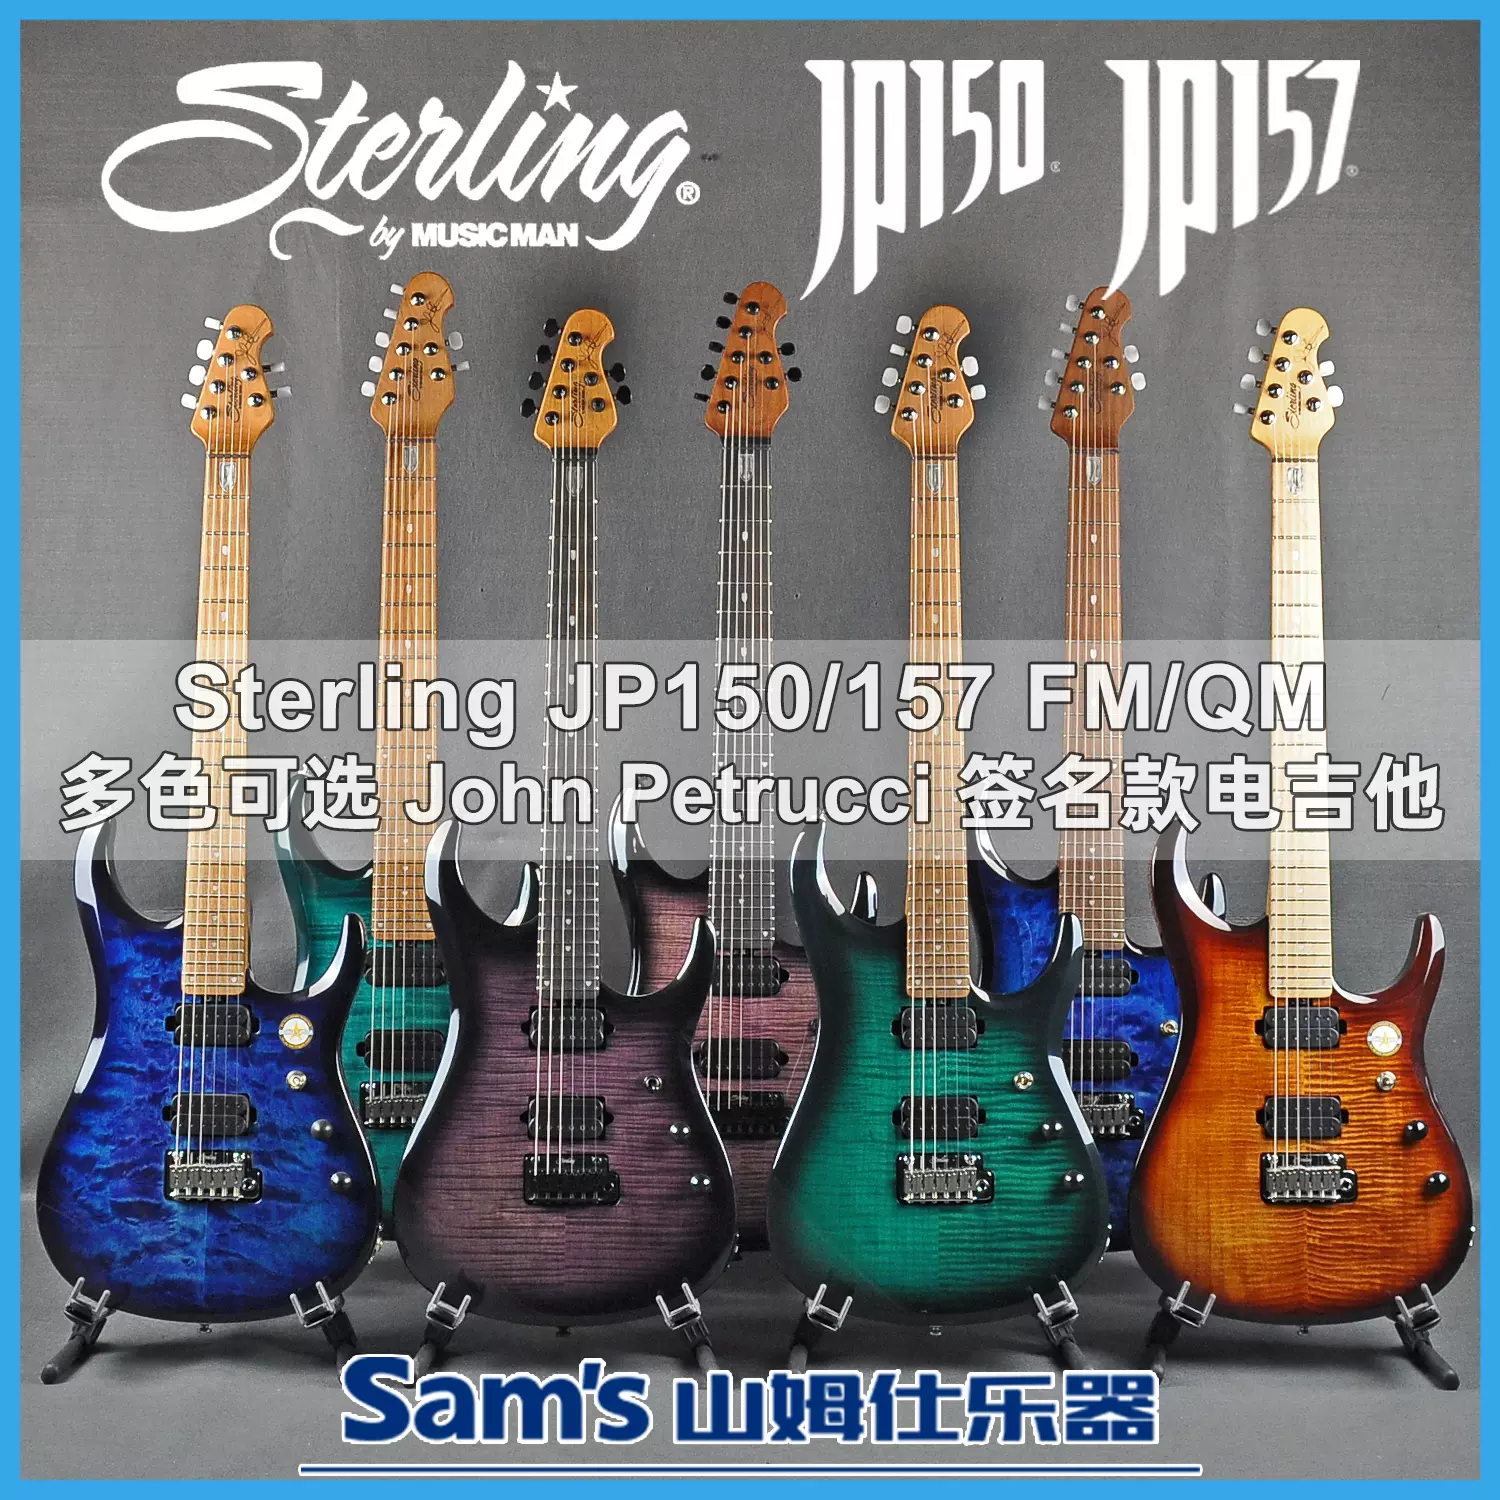 山姆仕乐器 Sterling by MusicMan JP150/157 多色可选印尼电吉他-Taobao